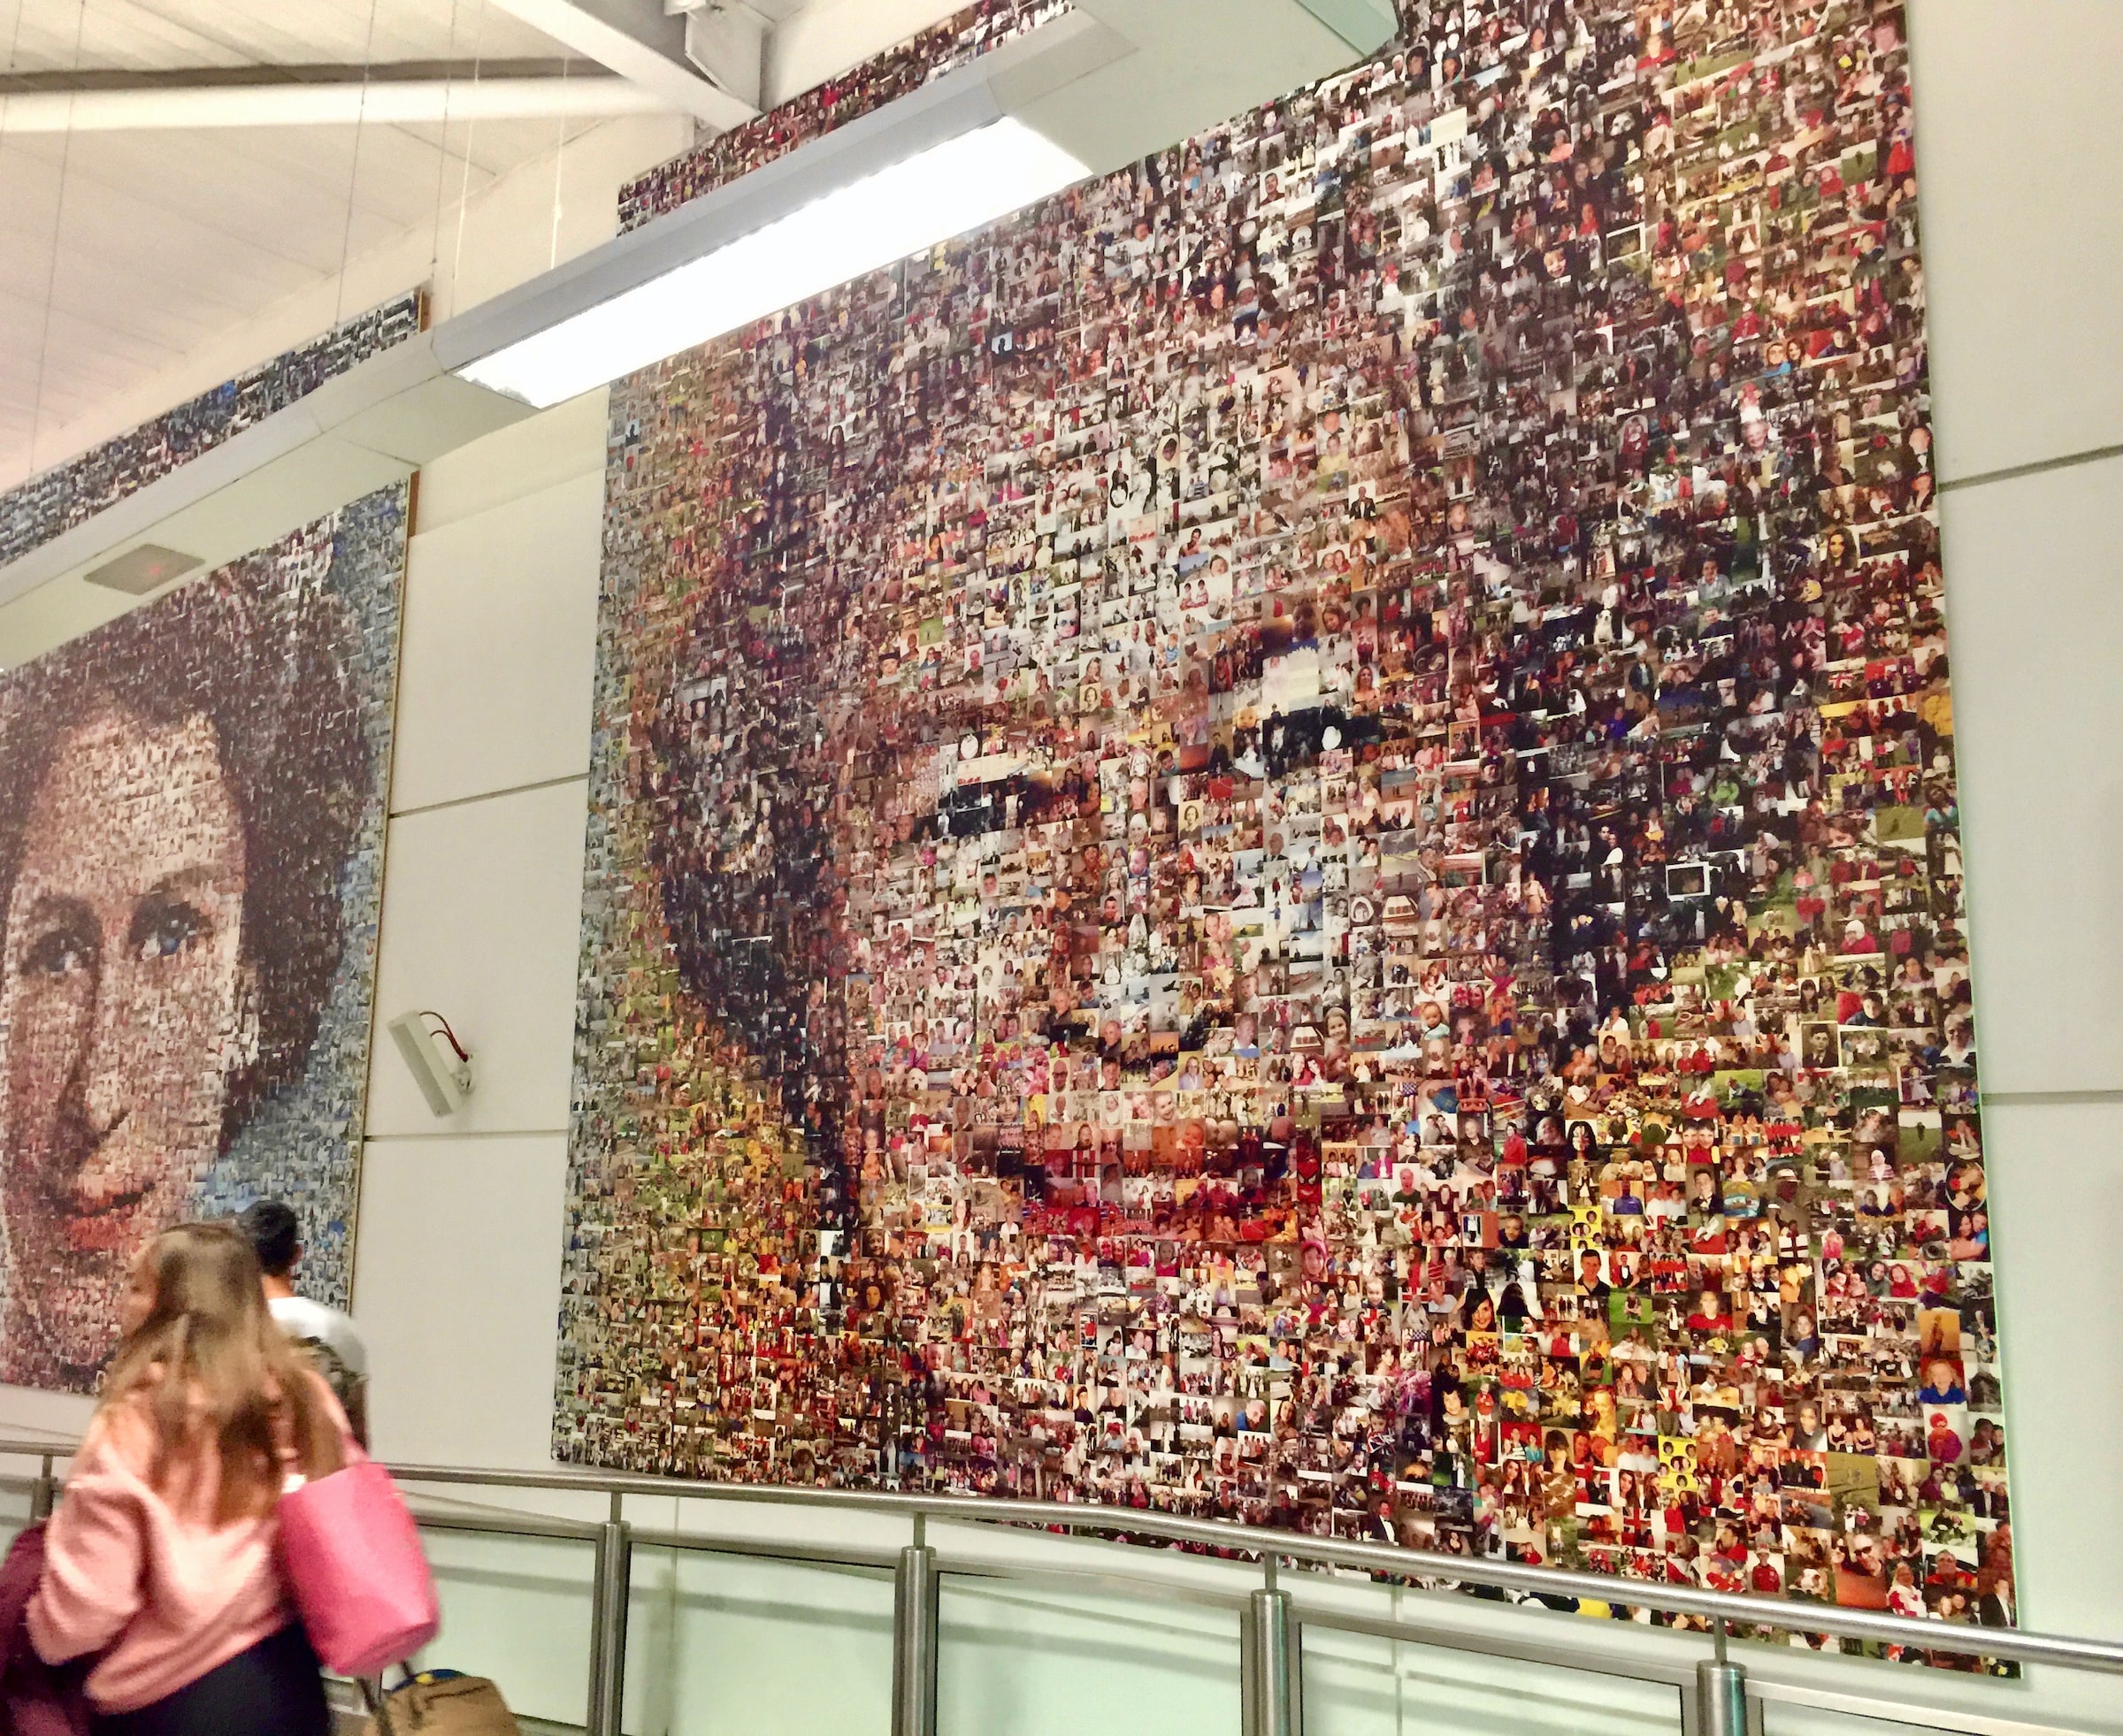 Queen Elizabeth Portrait In A Wall